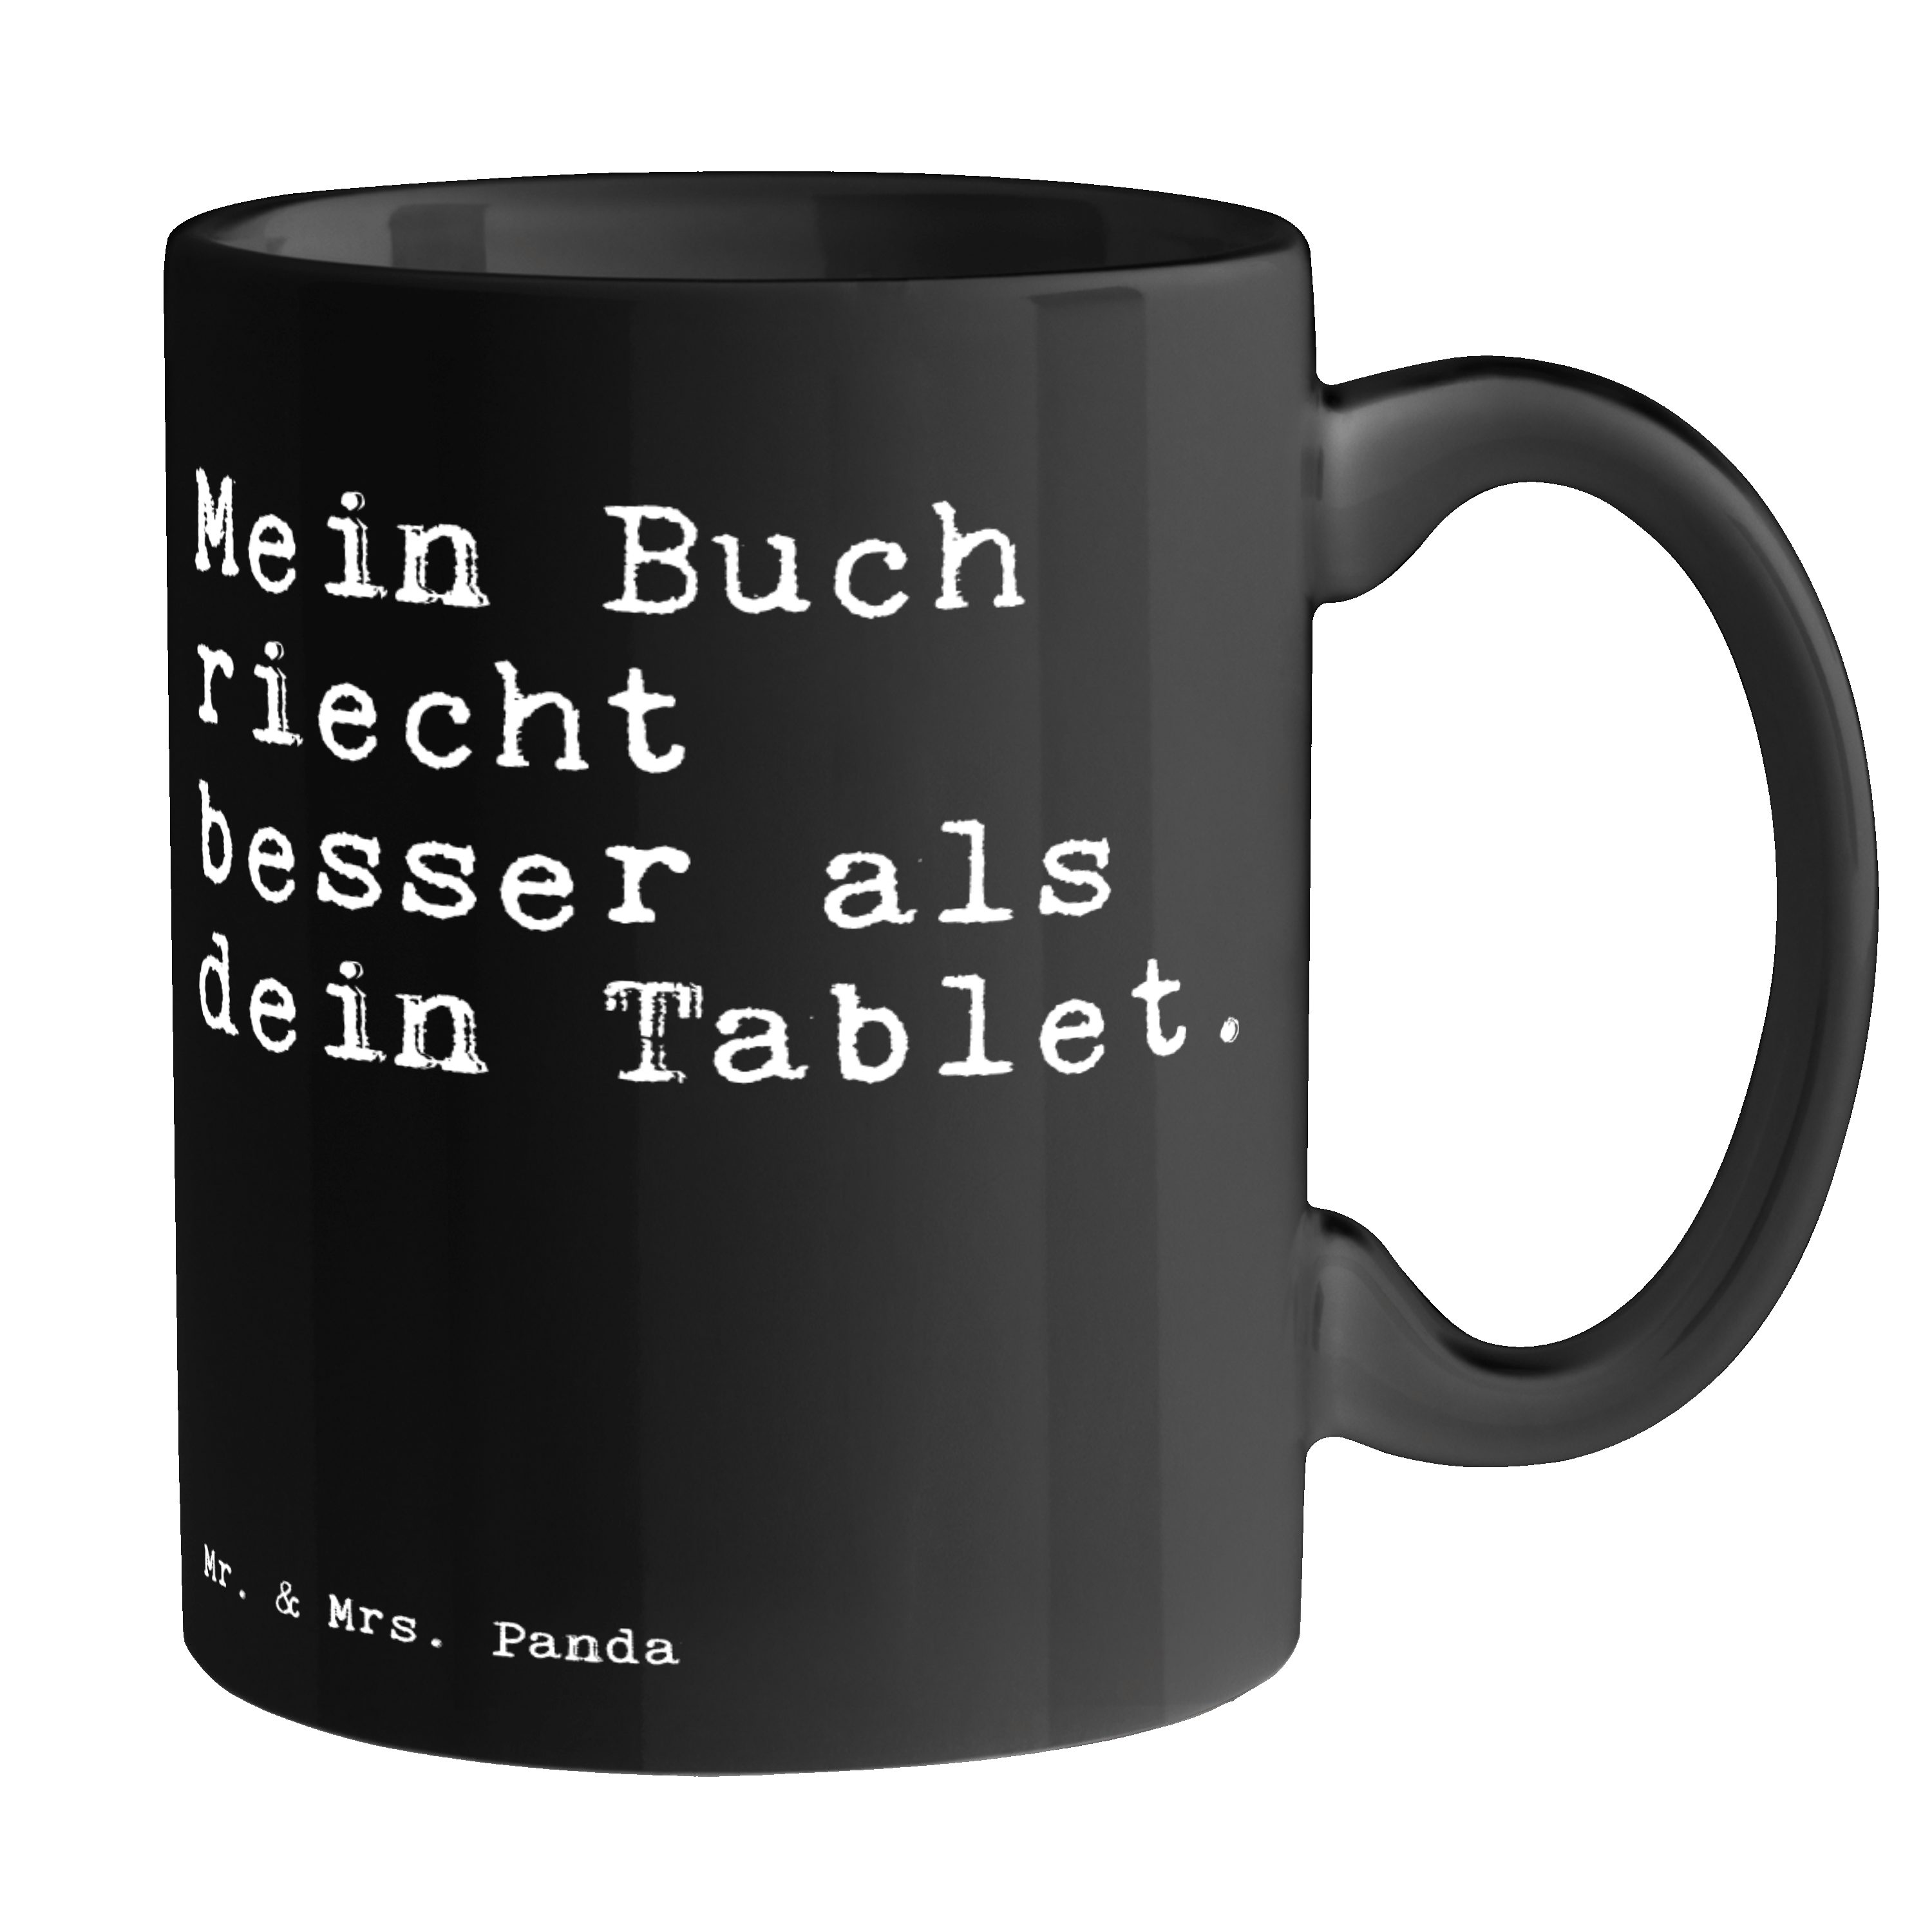 Tee, Keramik Tasse Panda Buch & Mrs. besser... Geschenk, Becher, Schwarz riecht - Schwarz Spruch, - Mr. Mein